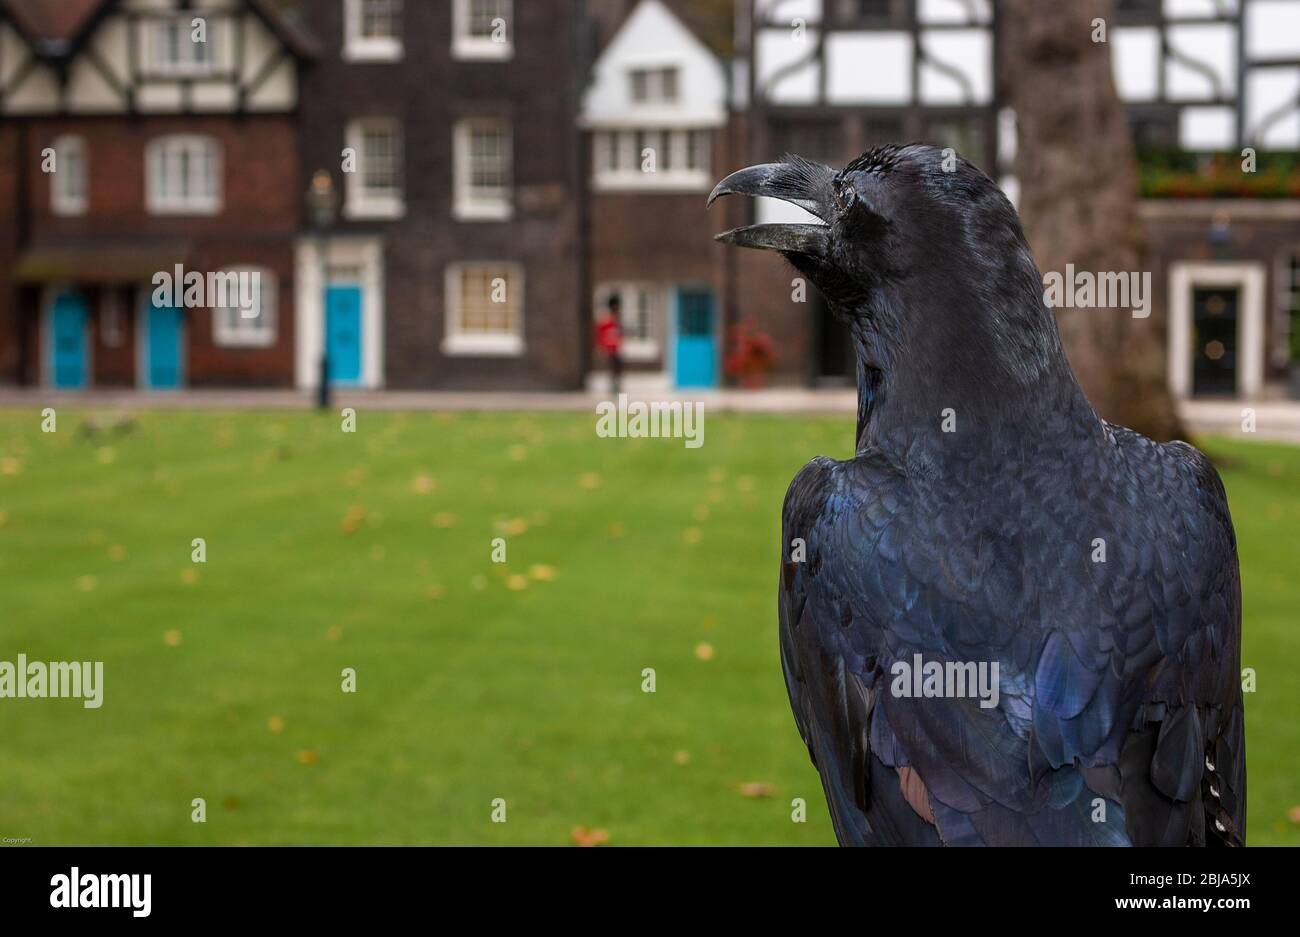 L'un des célèbres corbeaux noirs de la Tour de Londres perché dans une cour intérieure du Palais Royal historique, UNESCO, Londres, Angleterre, Royaume-Uni Banque D'Images